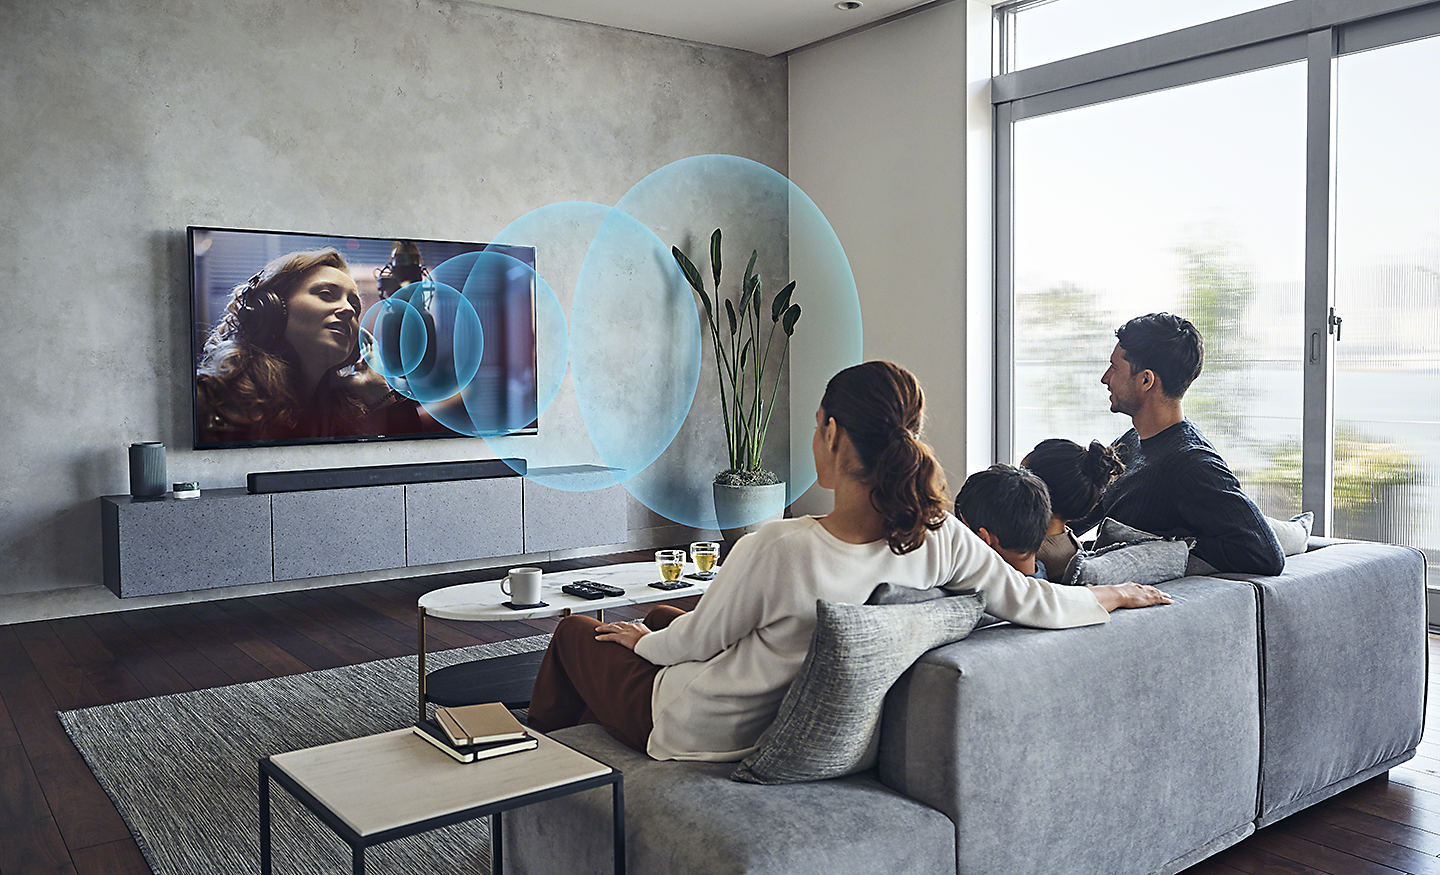 Famille dans un salon regardant une télévision BRAVIA avec des ondes sonores bleues représentant Acoustic Center Sync